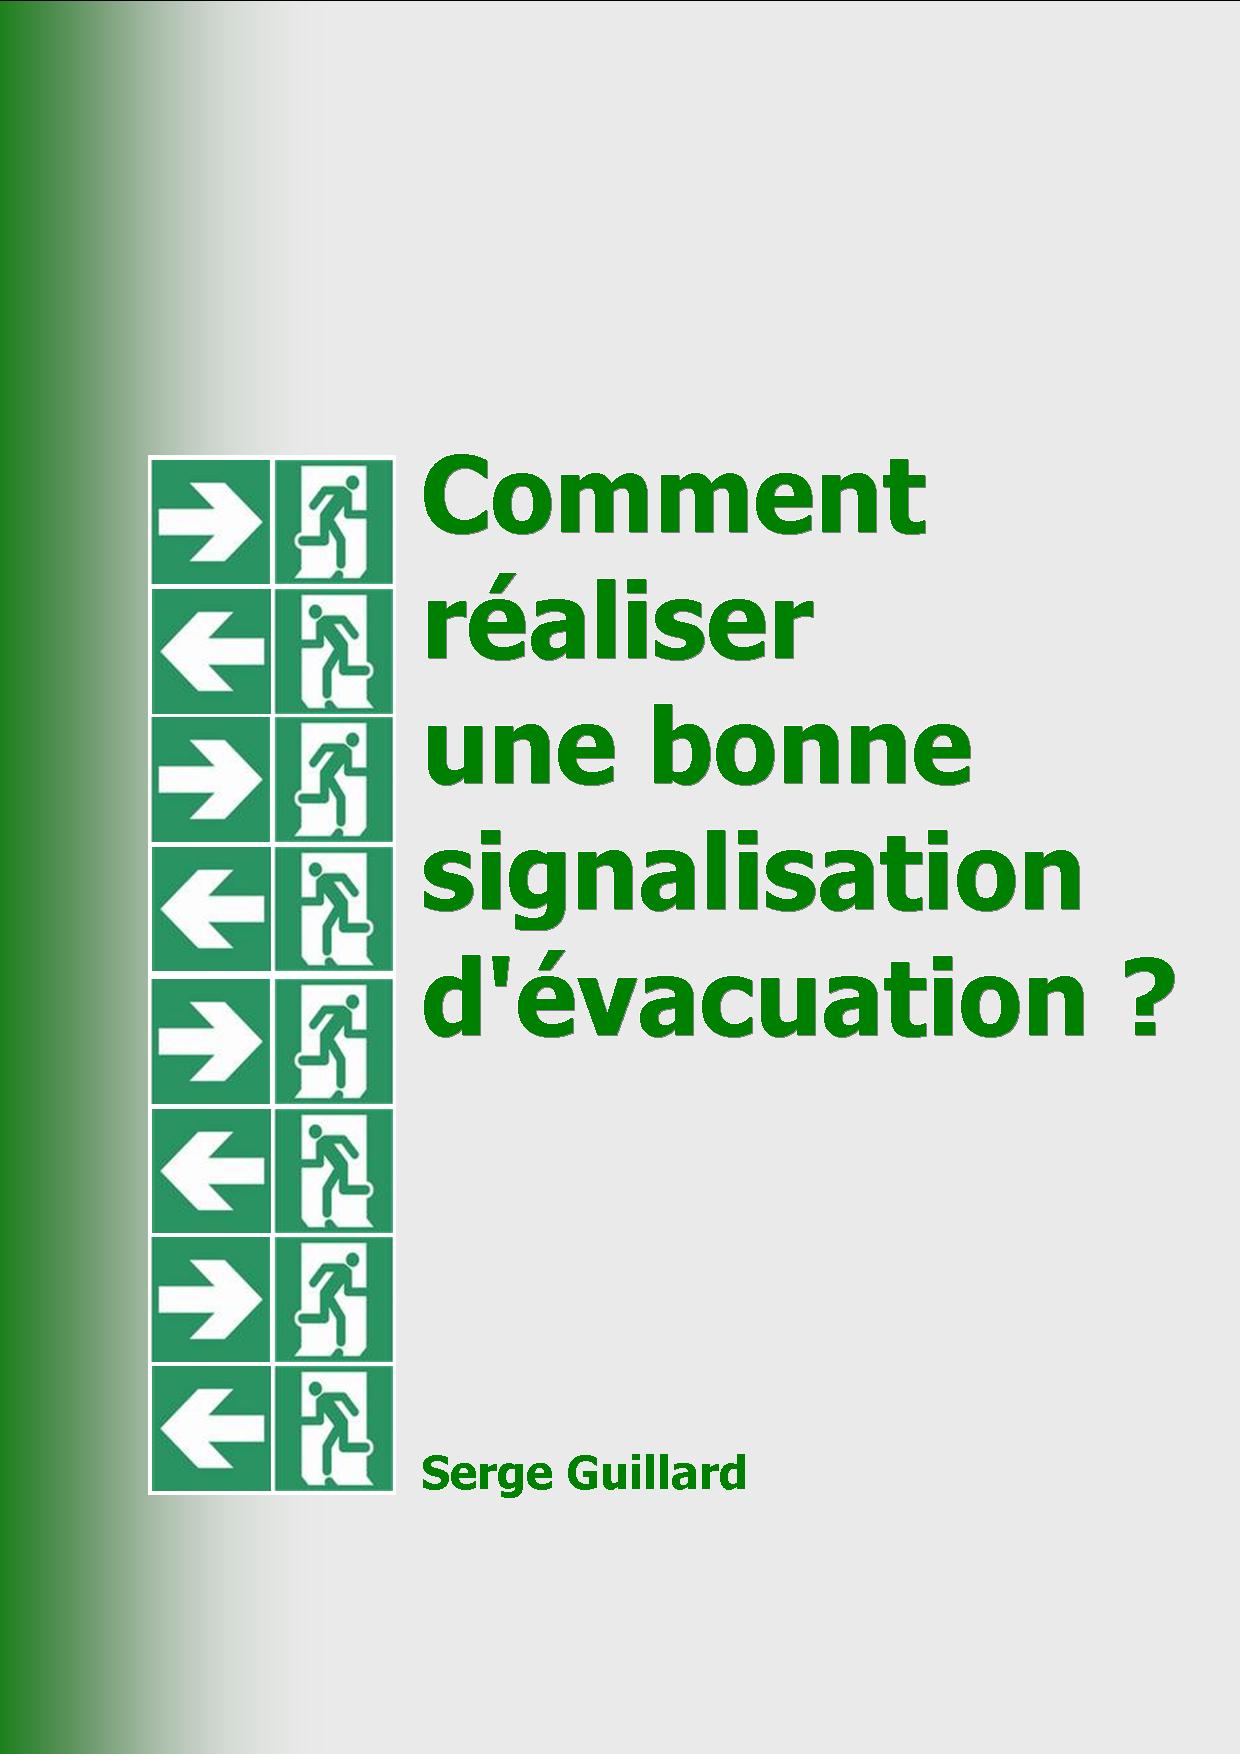 Comment réaliser une bonne signalisation d'évacuation ? ...  la réponse de Serge Guillard